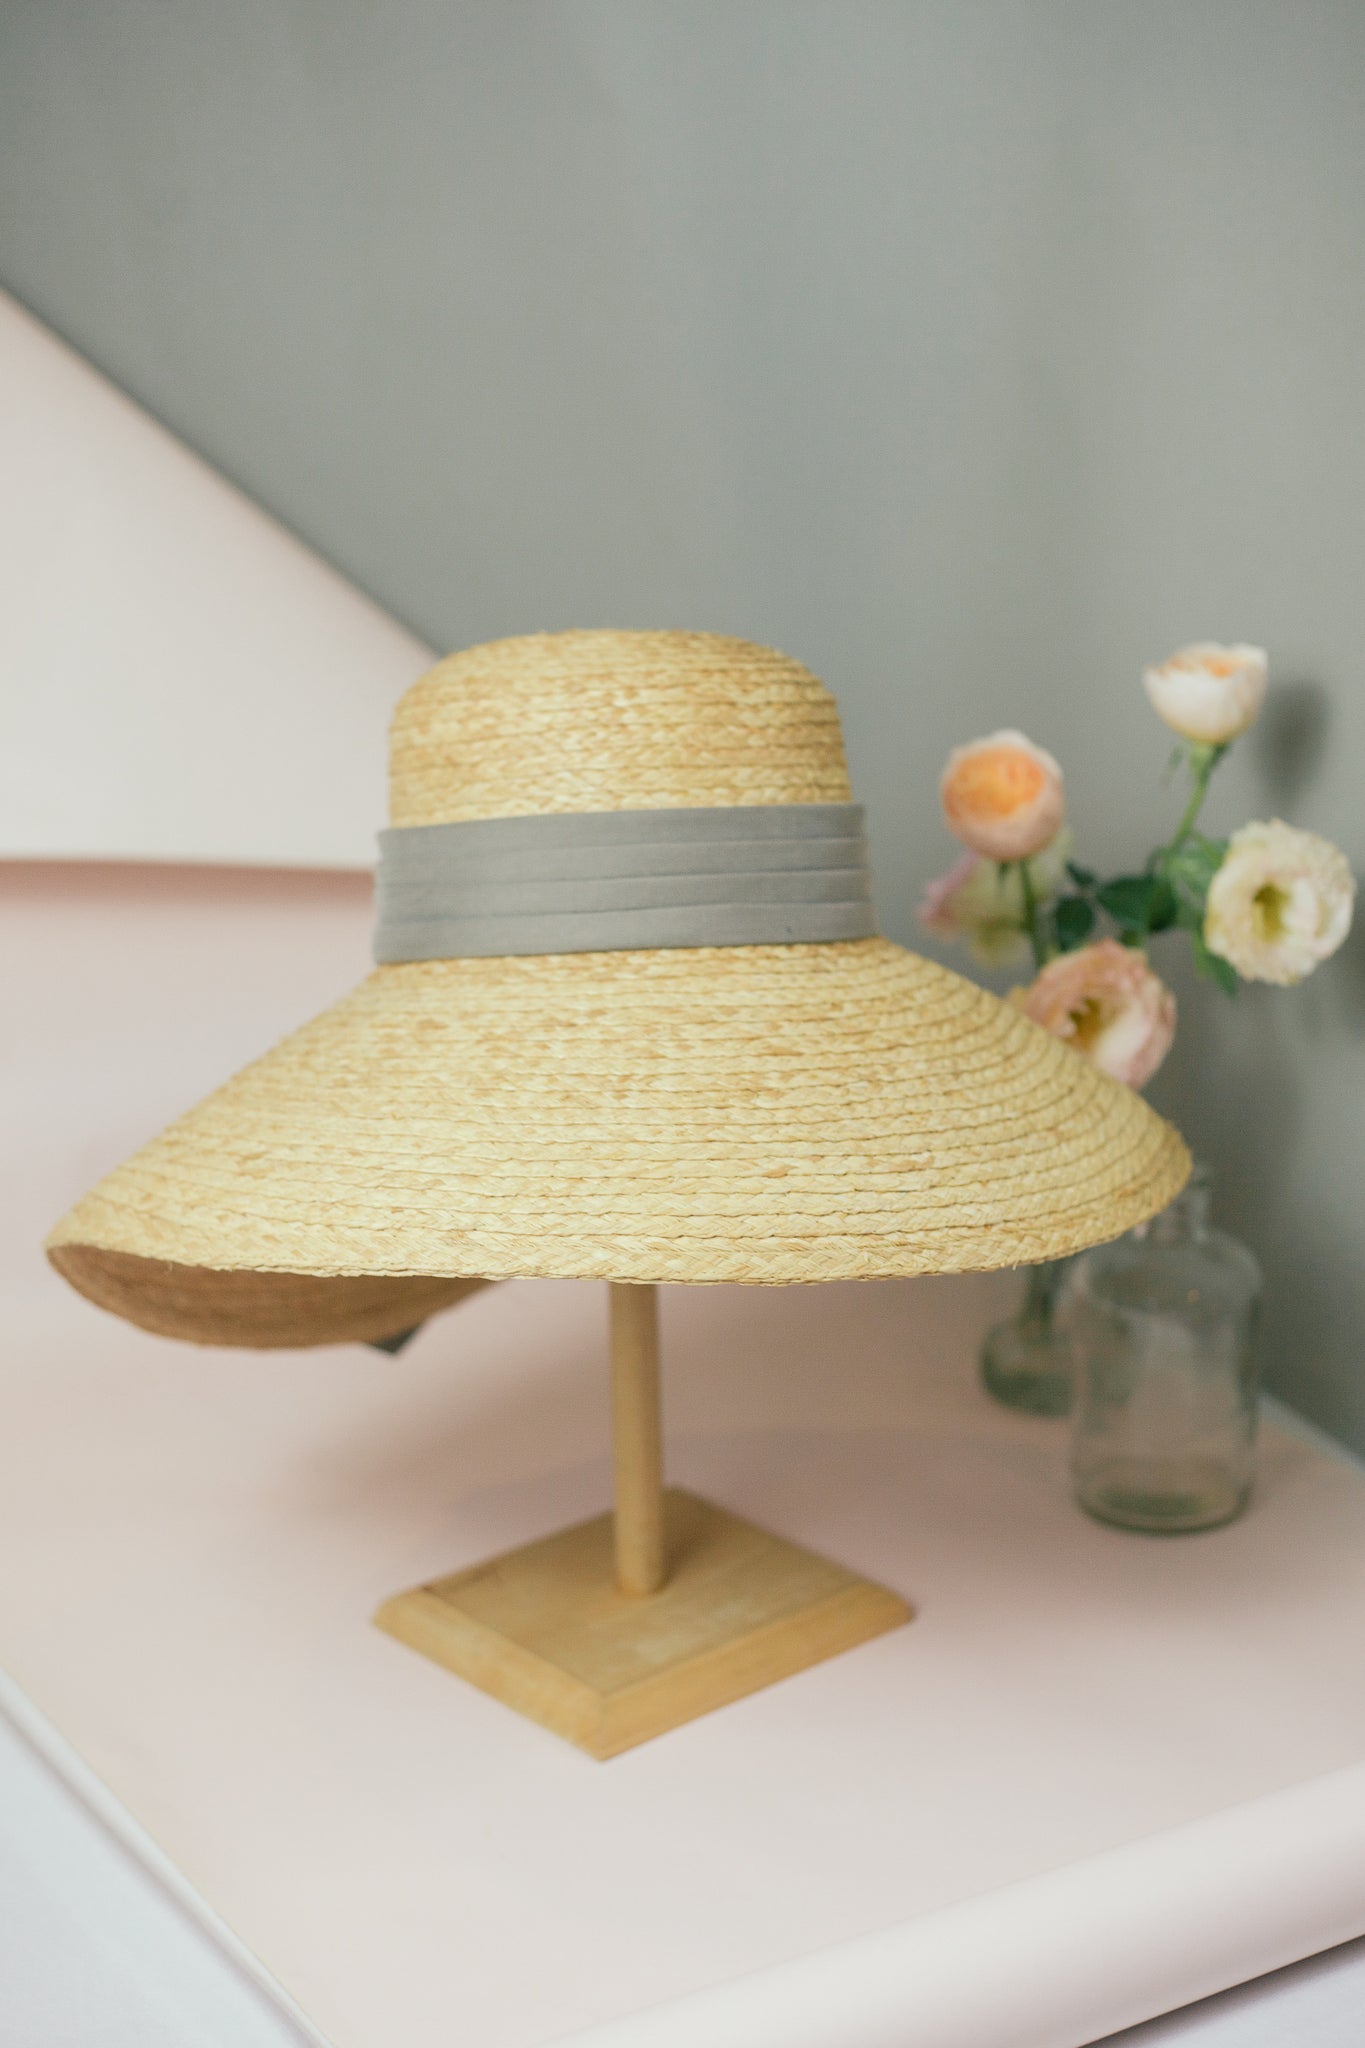 Nón cói Raffia Rosie là sản phẩm được làm bằng tay từ chất liệu tự nhiên, mang lại sự thoải mái và phong cách thời trang đầy cá tính. Hãy cùng khám phá những thiết kế nón cói độc đáo và sang trọng của Rosie.